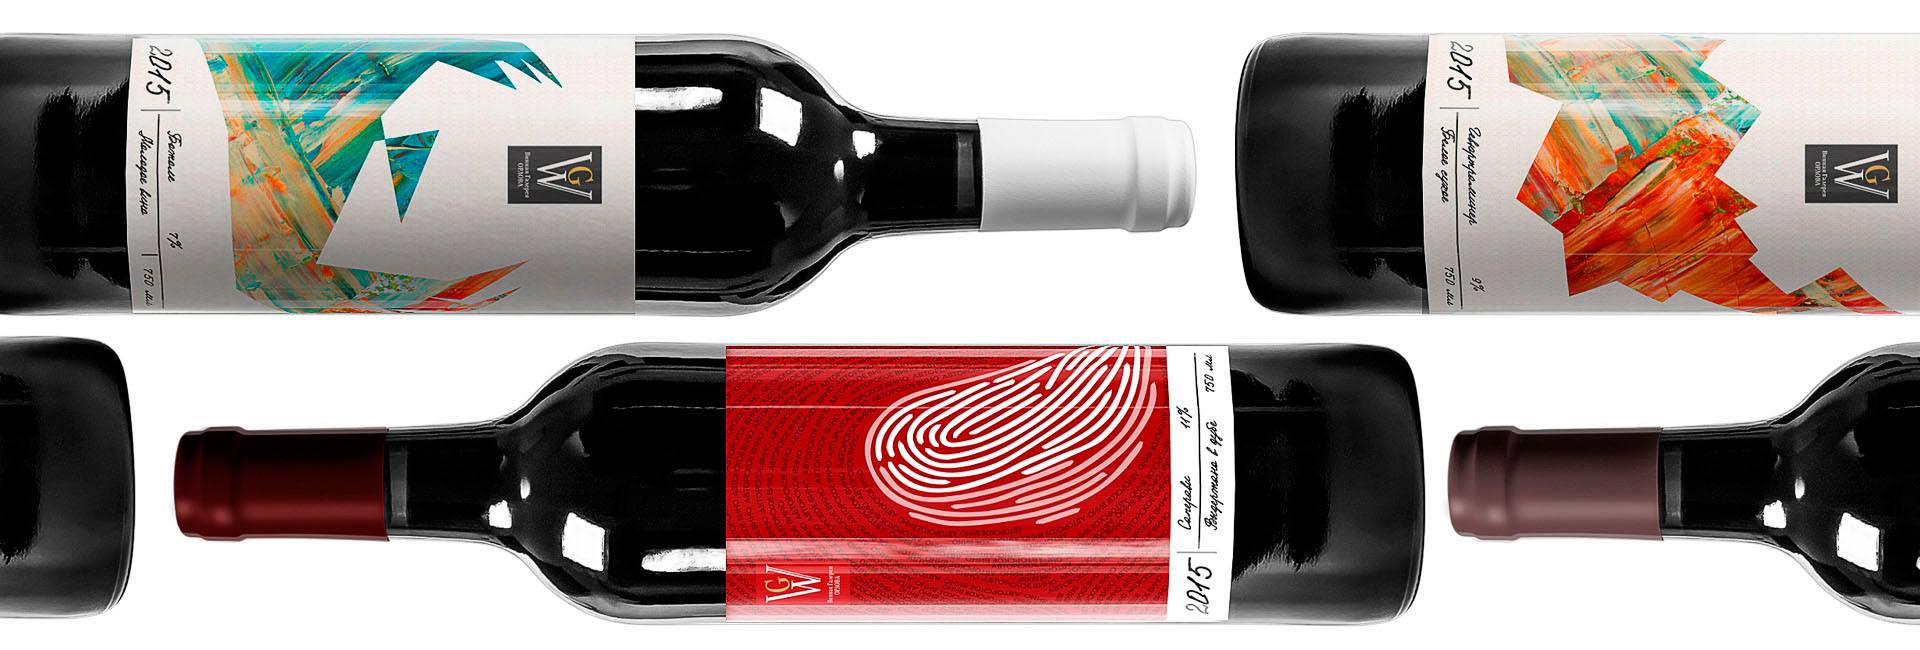 Дизайн этикеток линейки авторских вин, воплощающий идею о виноделии как искусстве